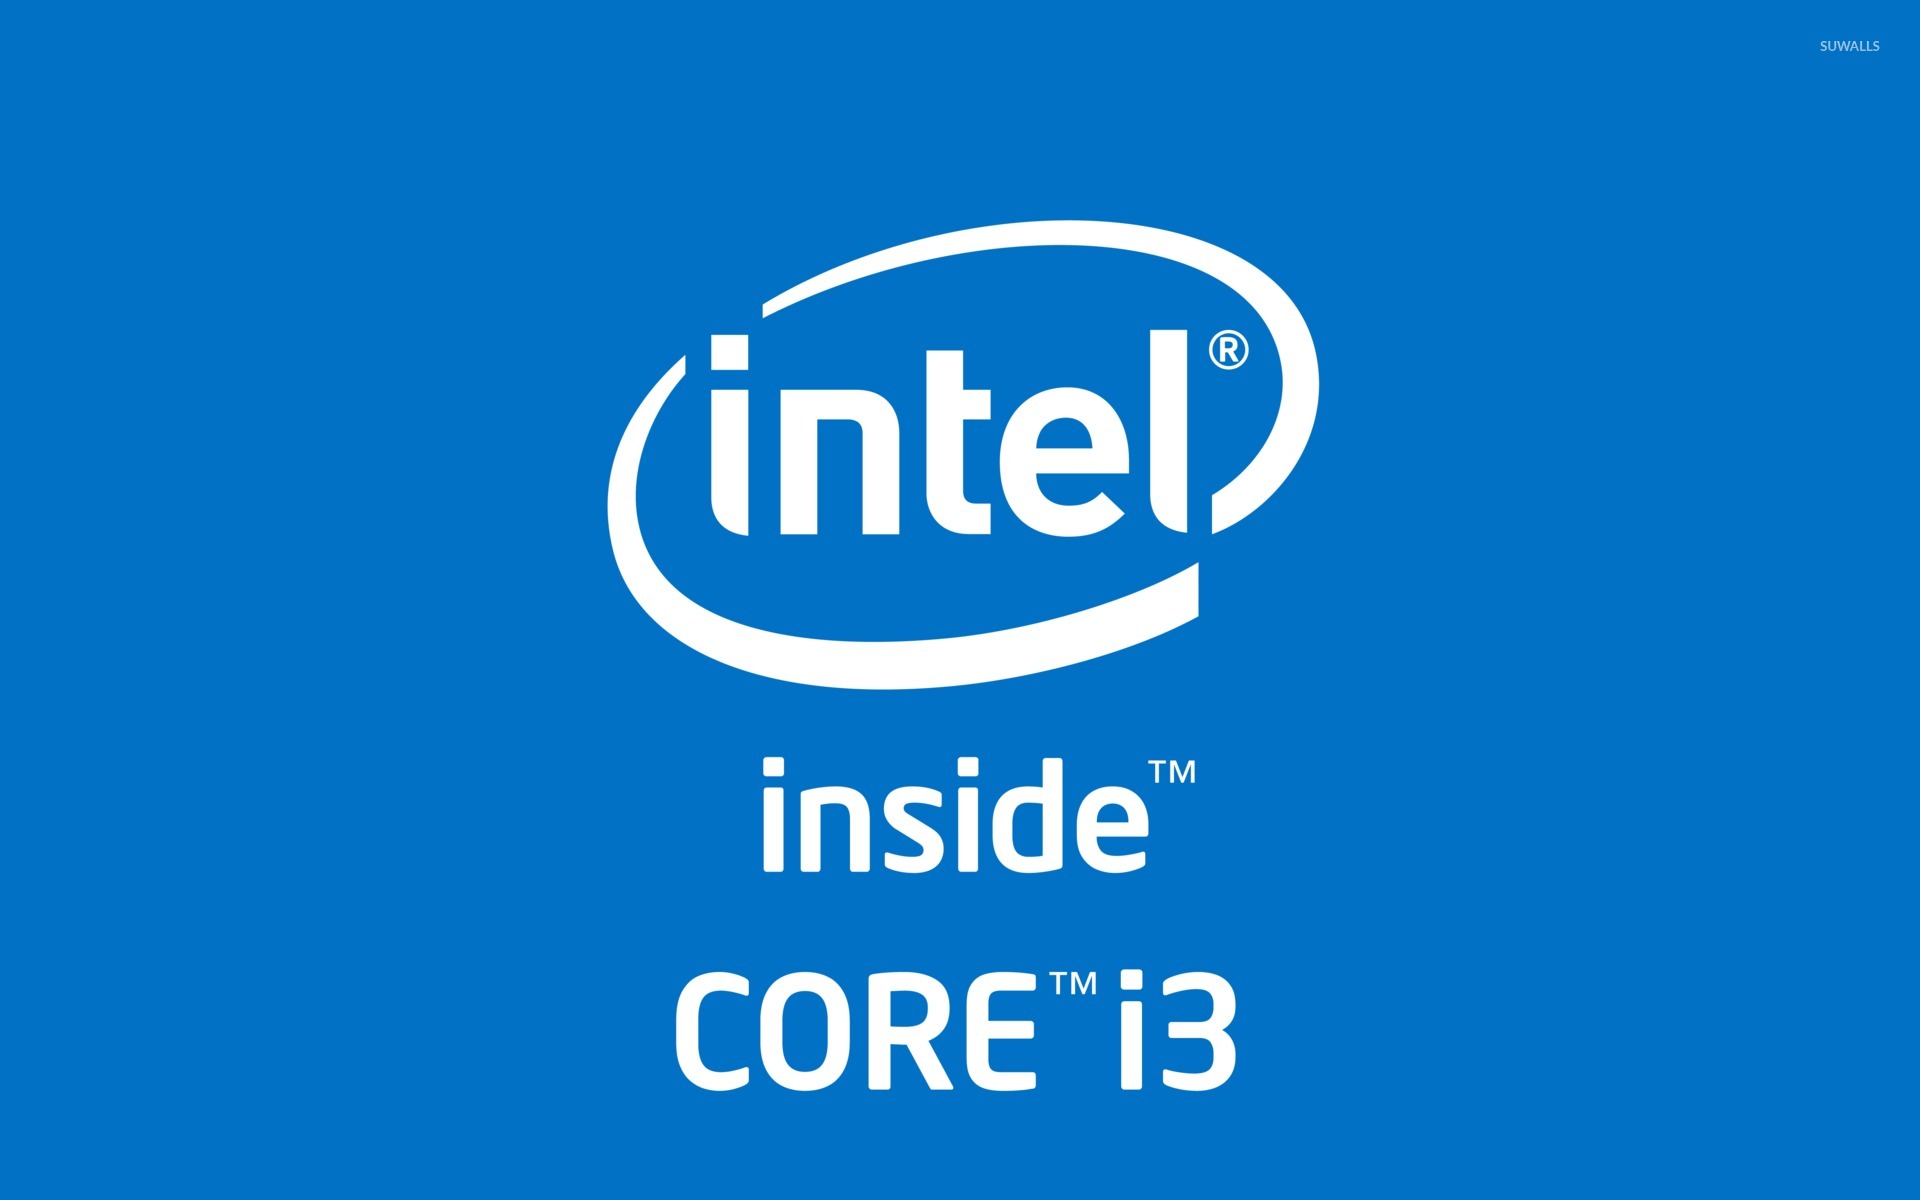 Reg intel. Intel Core i3 logo. Intel Core i3 inside. Процессор Intel Core i7 logo. Интел i-Core логотип.